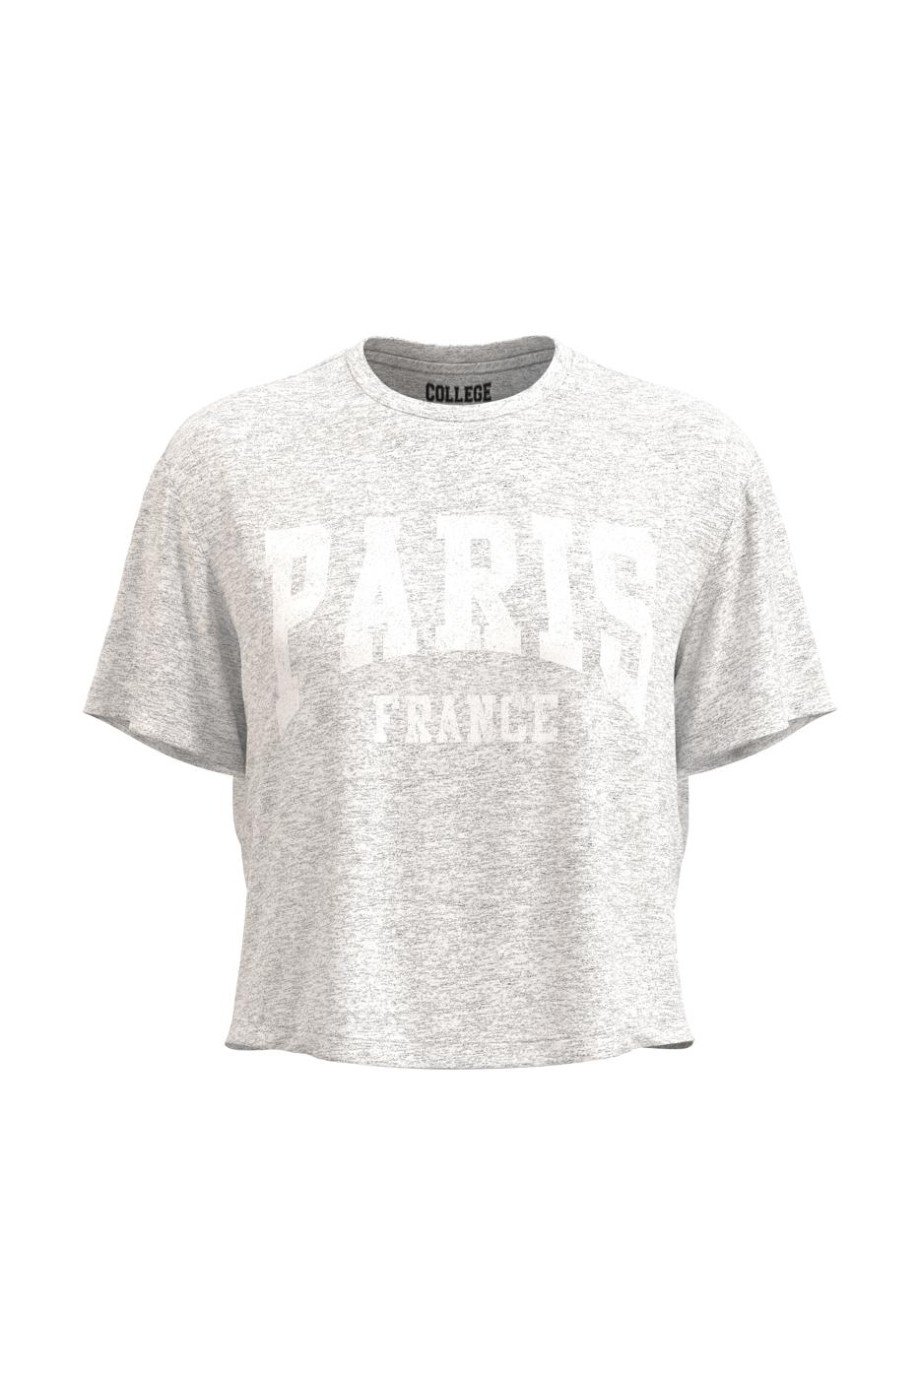 Camiseta unicolor crop top con cuello redondo y diseño college de París